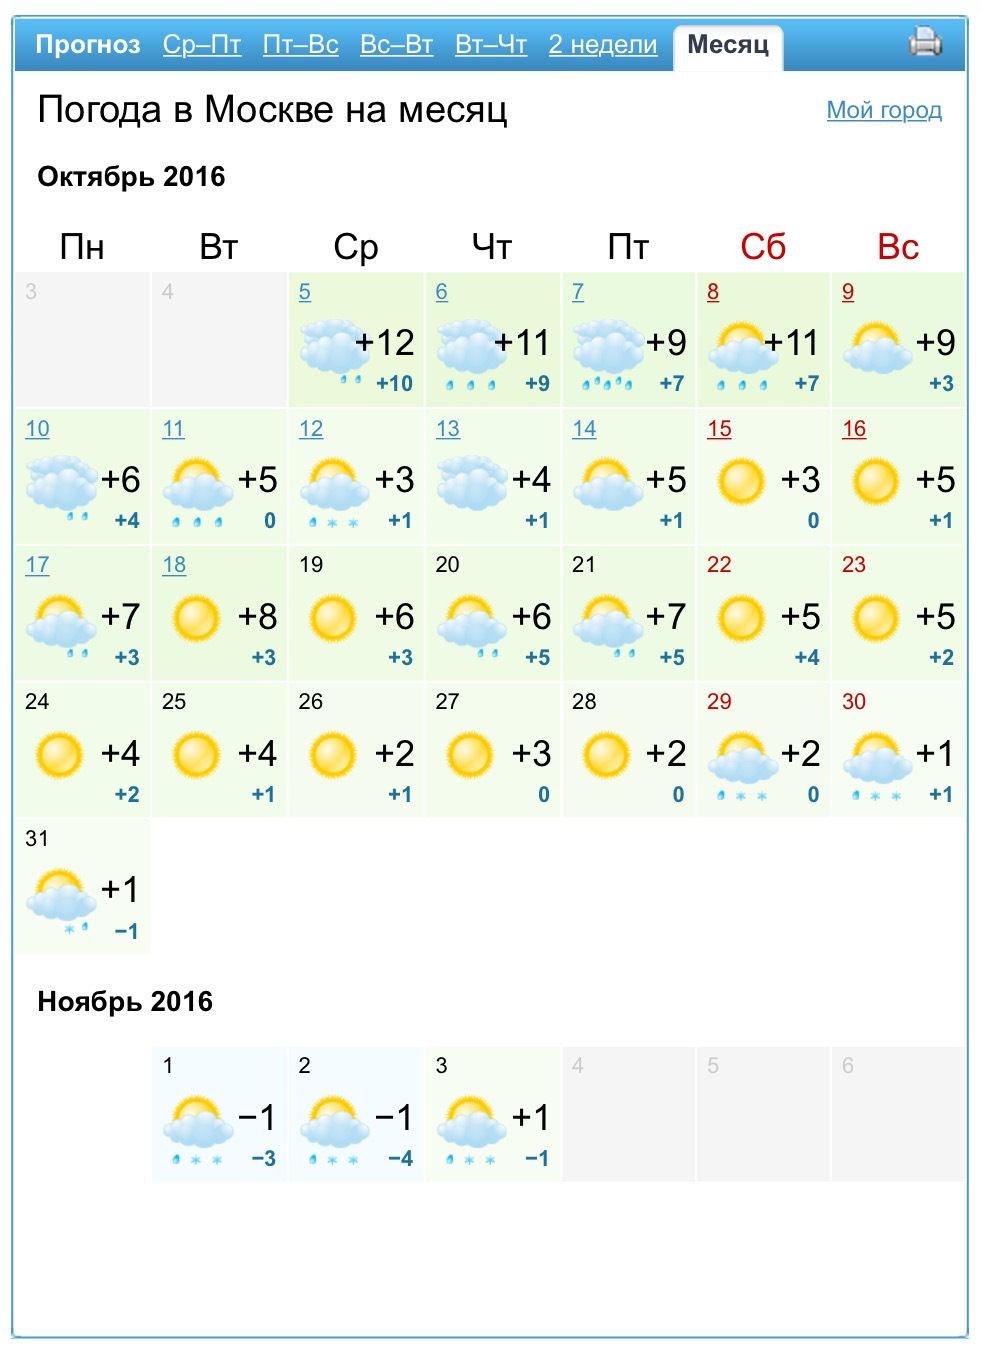 Погода в московской области на следующую неделю. Прогноз погоды на неделю. Прогноз погоды в Москве. Прогноспогодынанеделю. Погода за неделю.